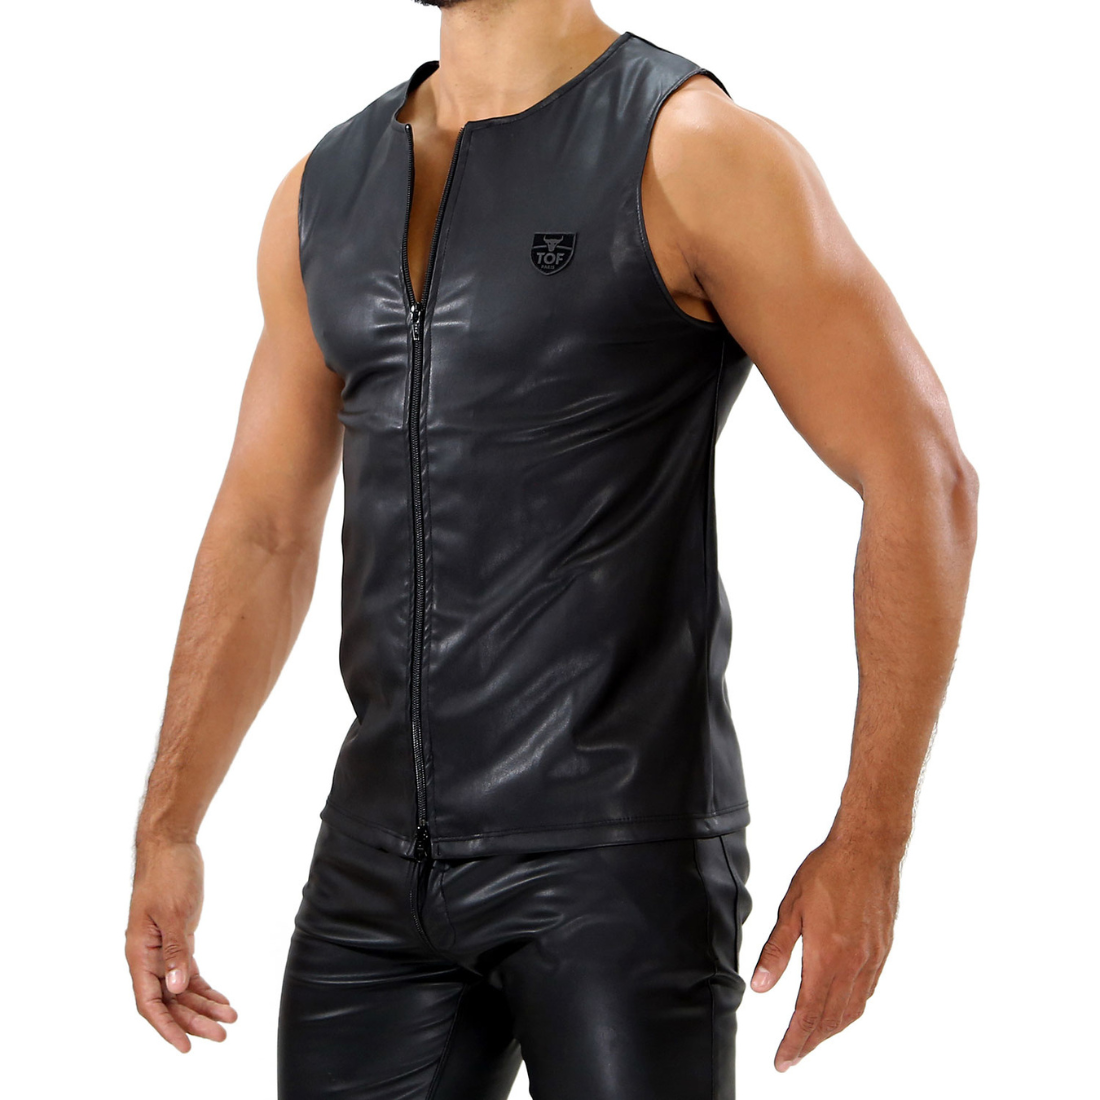 Sexy, zwarte vegan leather tank top, ontworpen door het Franse modehuis Tof Paris en te koop bij Flavourez.